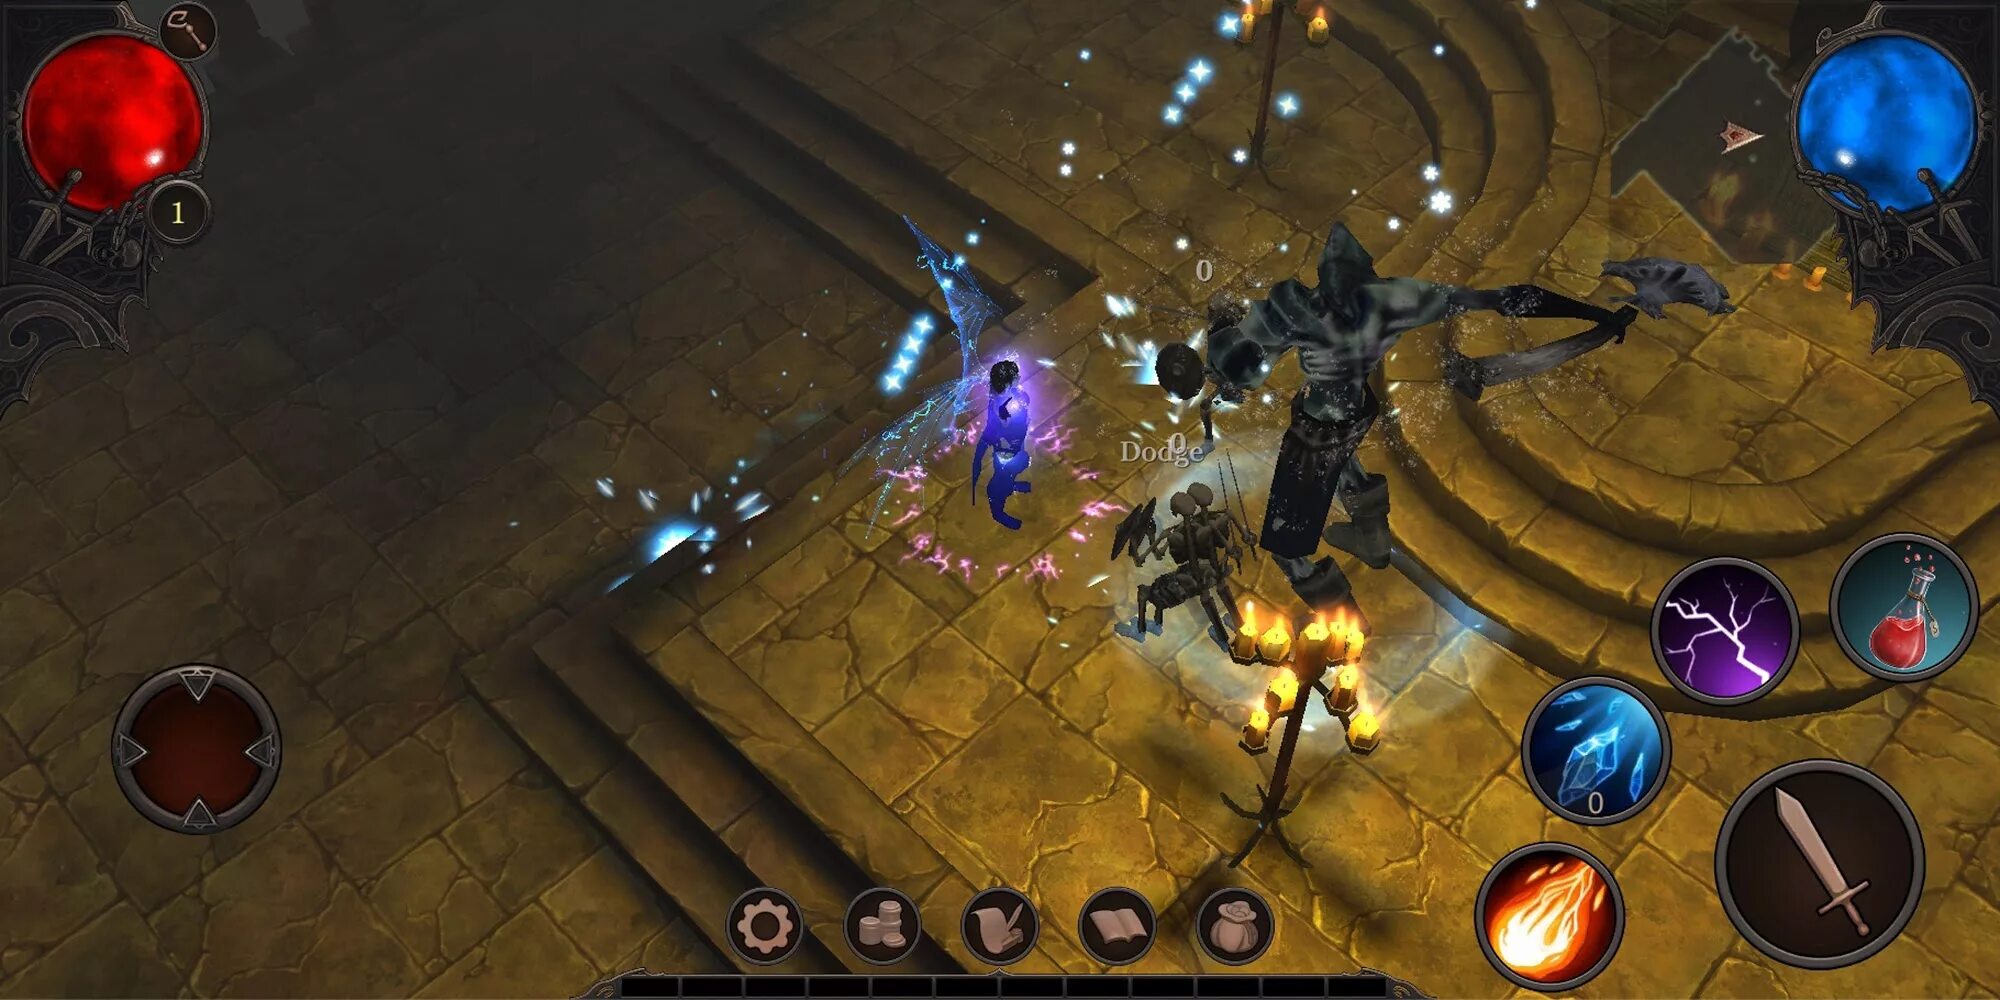 РПГ типа диабло 3. Diablo 3 Android. Vengeance игра на андроид. Диабло мультиплеер.